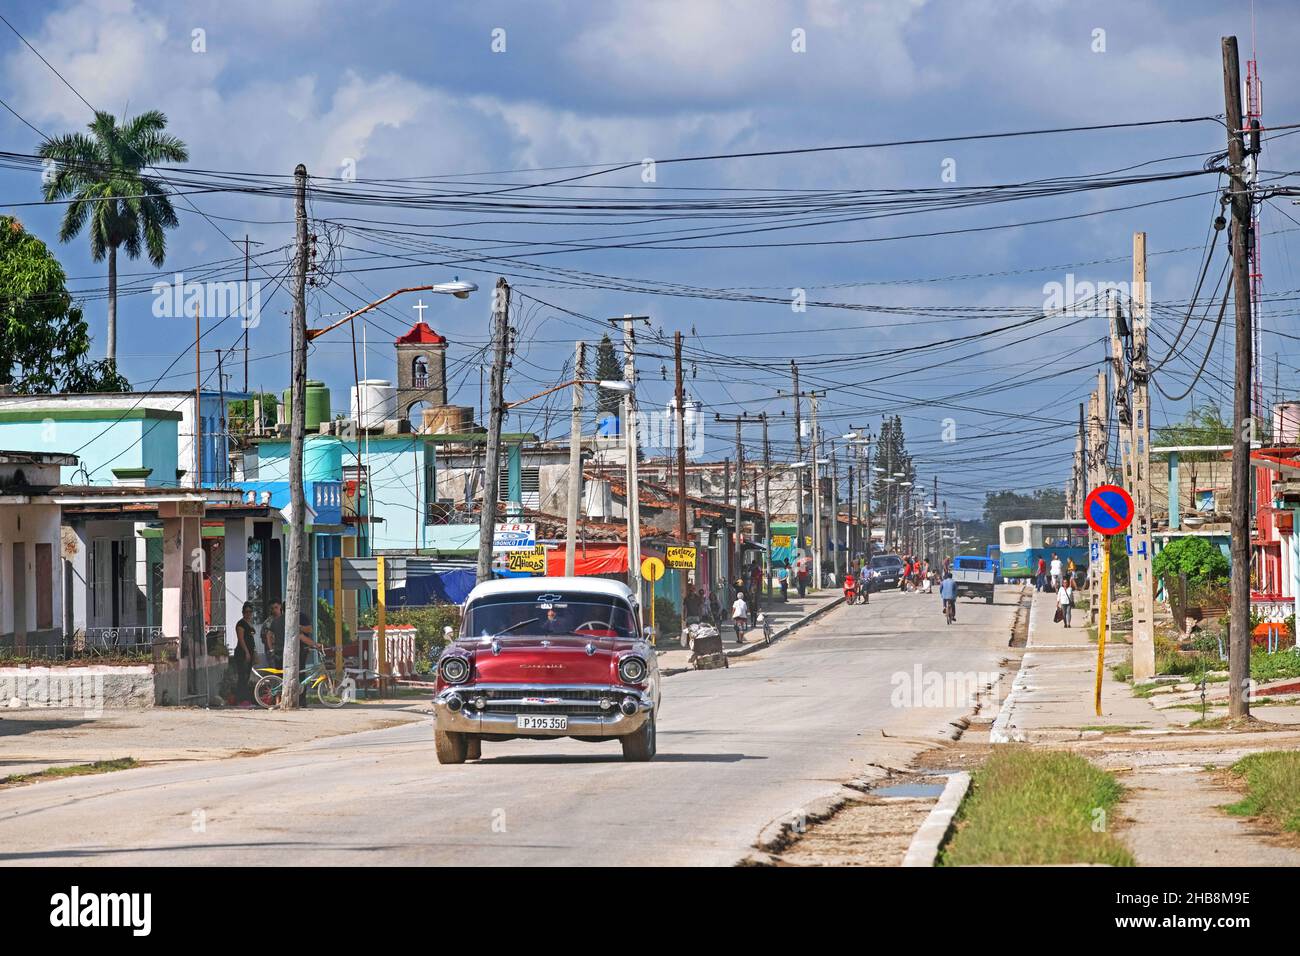 Rot-amerikanischer Oldtimer, der durch die Stadt Jatibonico, Provinz Sancti Spíritus auf der Insel Kuba, Karibik, fährt Stockfoto